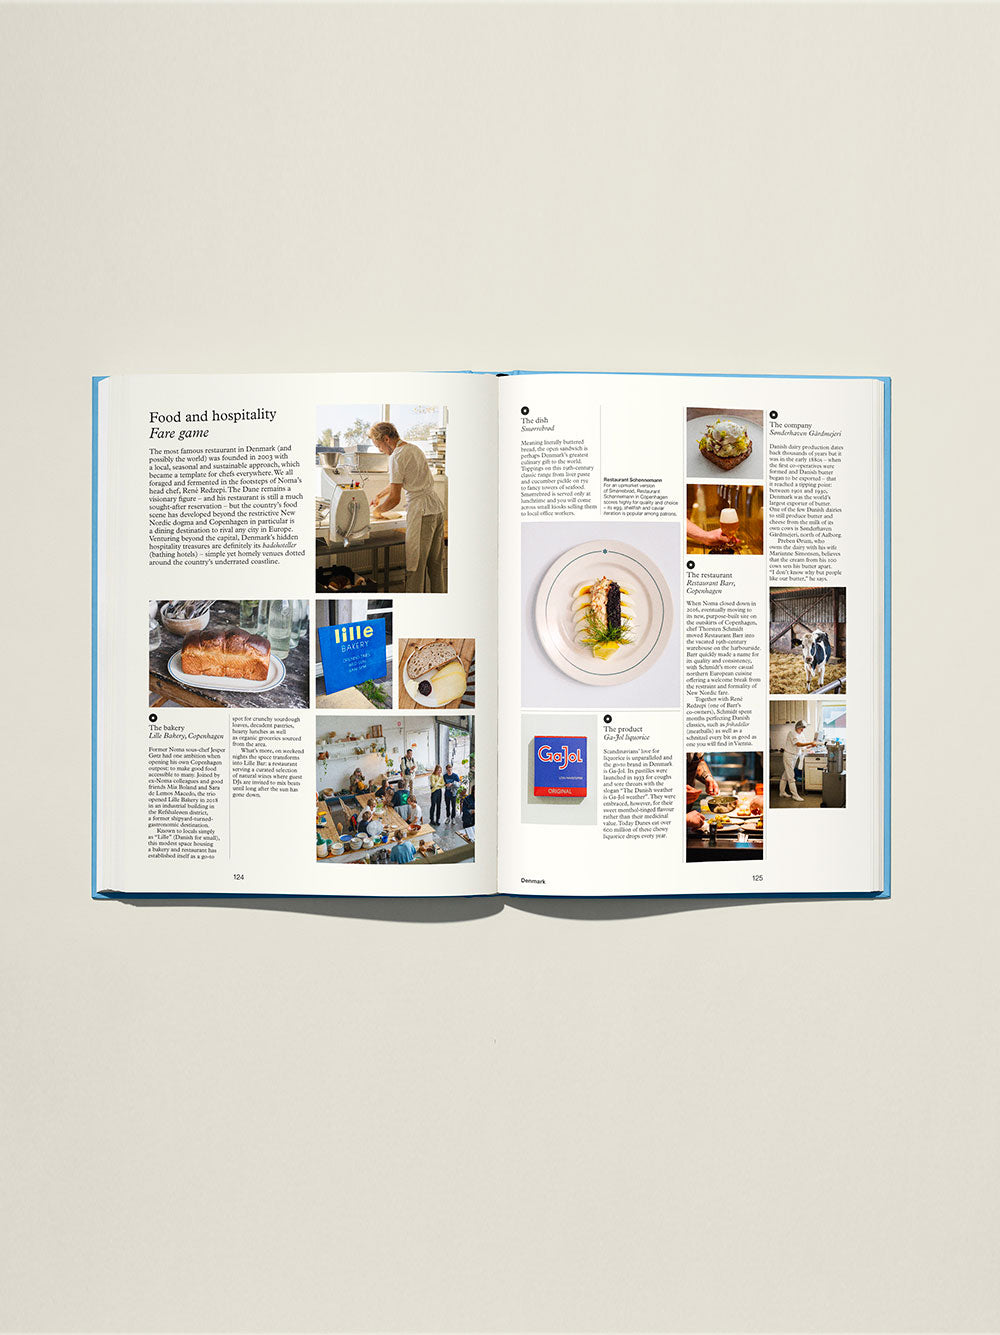 Monoklowa Księga Nordyków: eksploracja designu, biznesu, jedzenia i mody